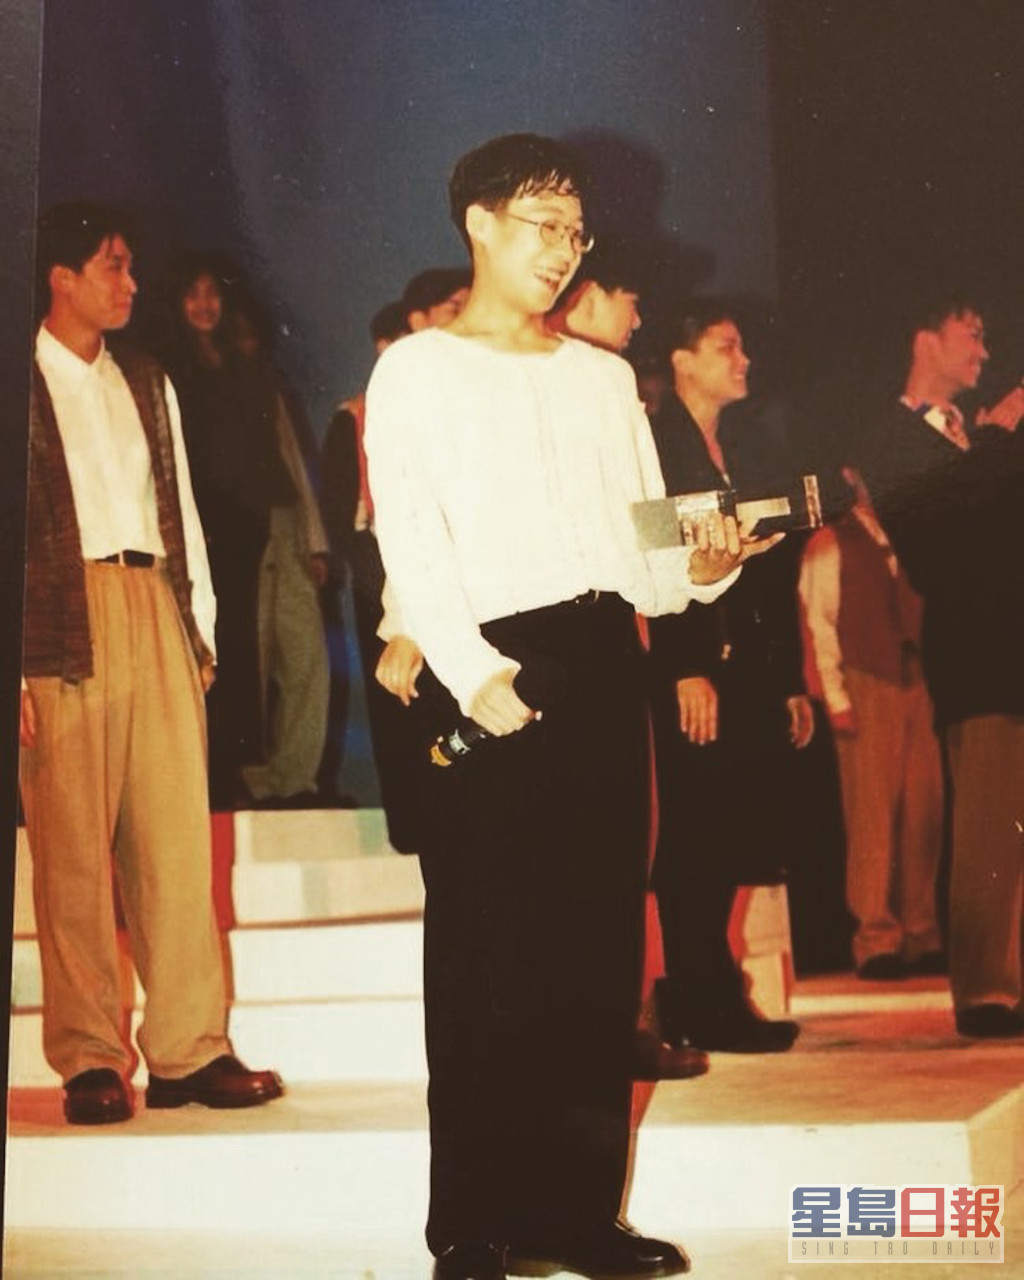 1994年，丁文俊赢得由加拿大温哥华新时代电视主办的首届《新秀歌唱大赛温哥华选拔赛》的冠军。